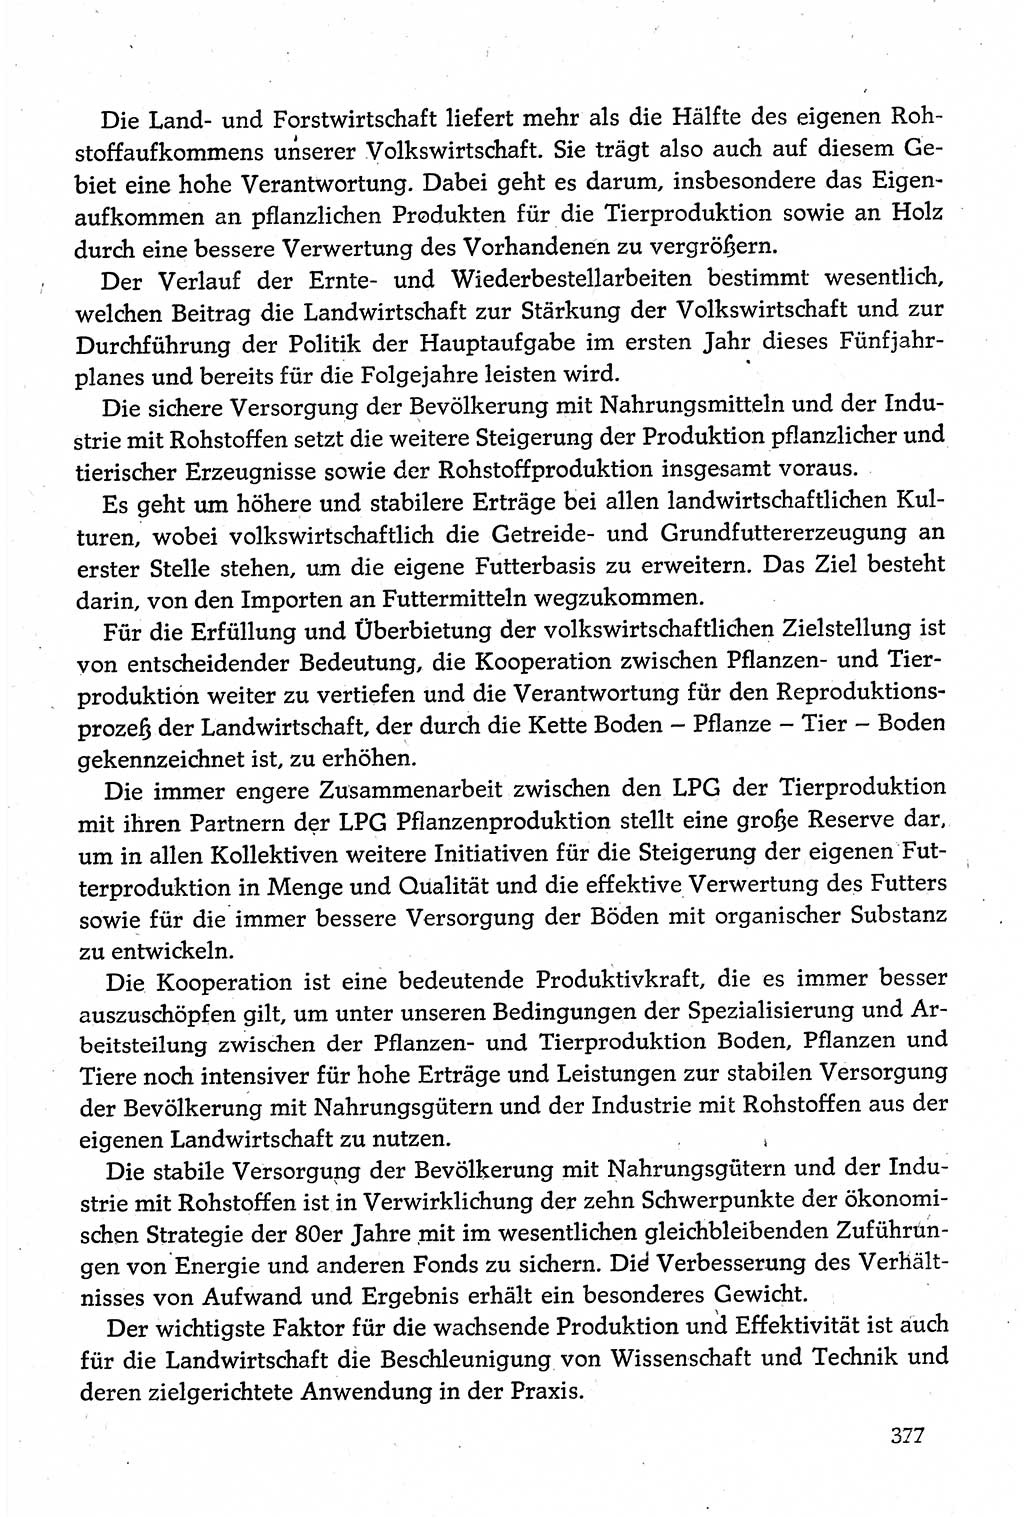 Dokumente der Sozialistischen Einheitspartei Deutschlands (SED) [Deutsche Demokratische Republik (DDR)] 1980-1981, Seite 377 (Dok. SED DDR 1980-1981, S. 377)